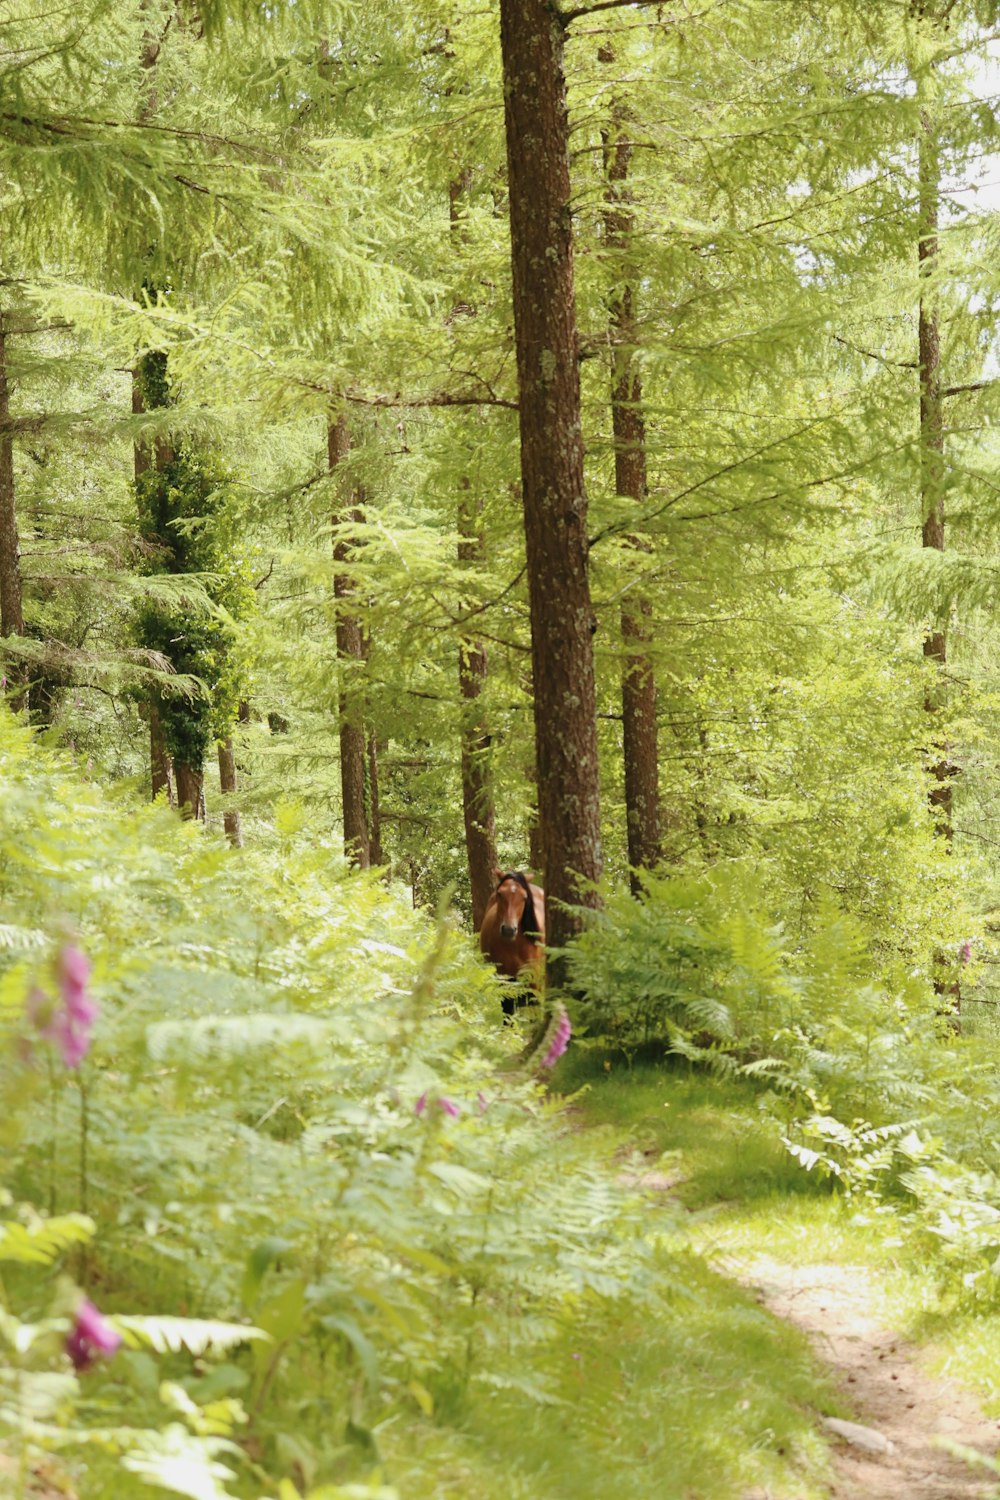 Ein Bär geht durch einen üppigen grünen Wald